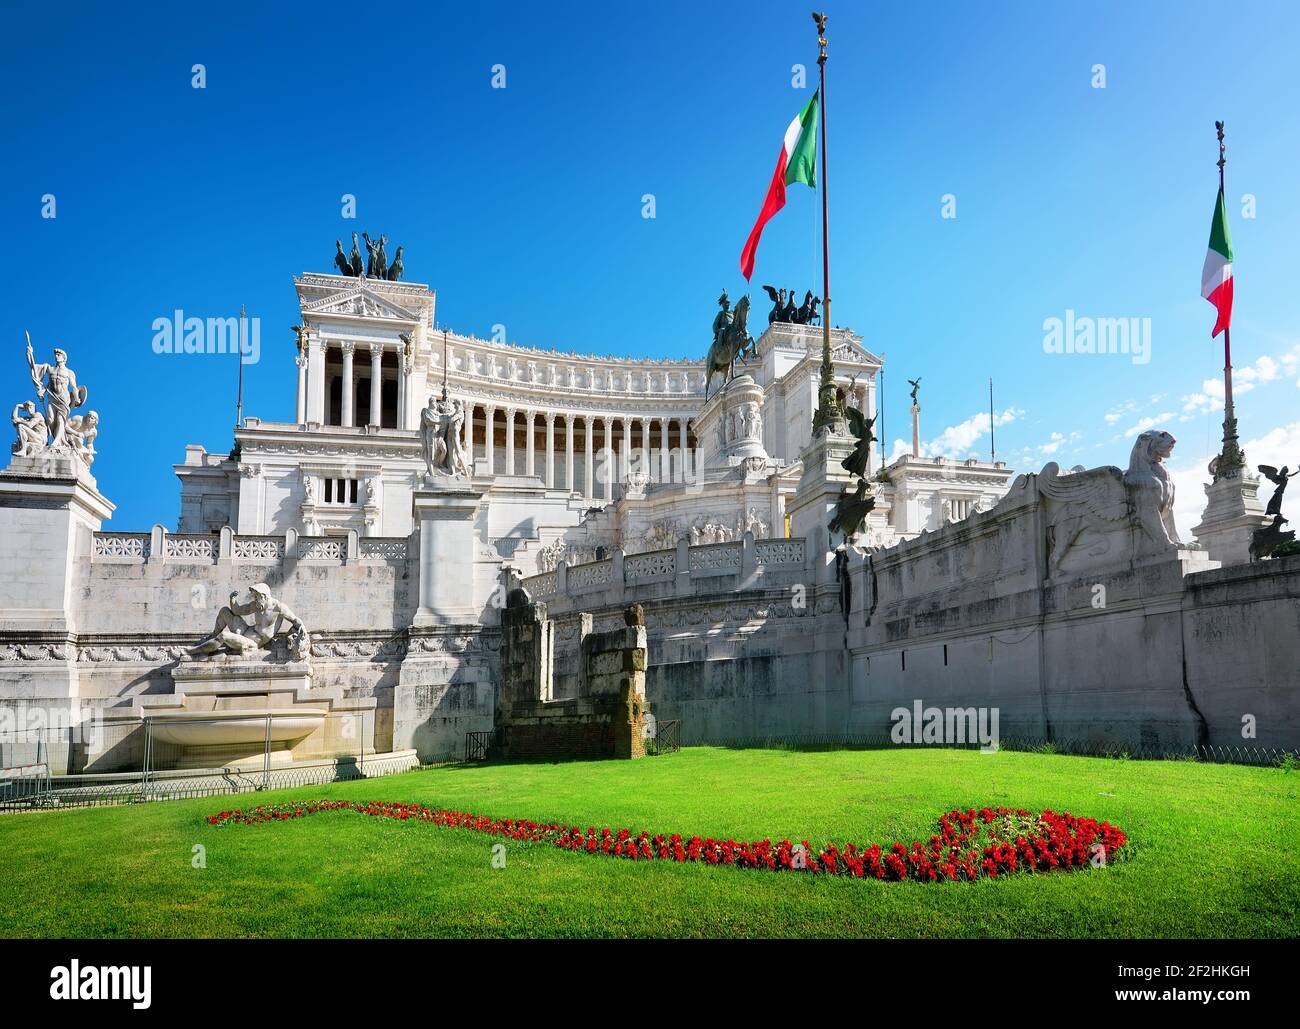 Il Vittoriano in Piazza Venezia, Rome, Italy Stock Photo